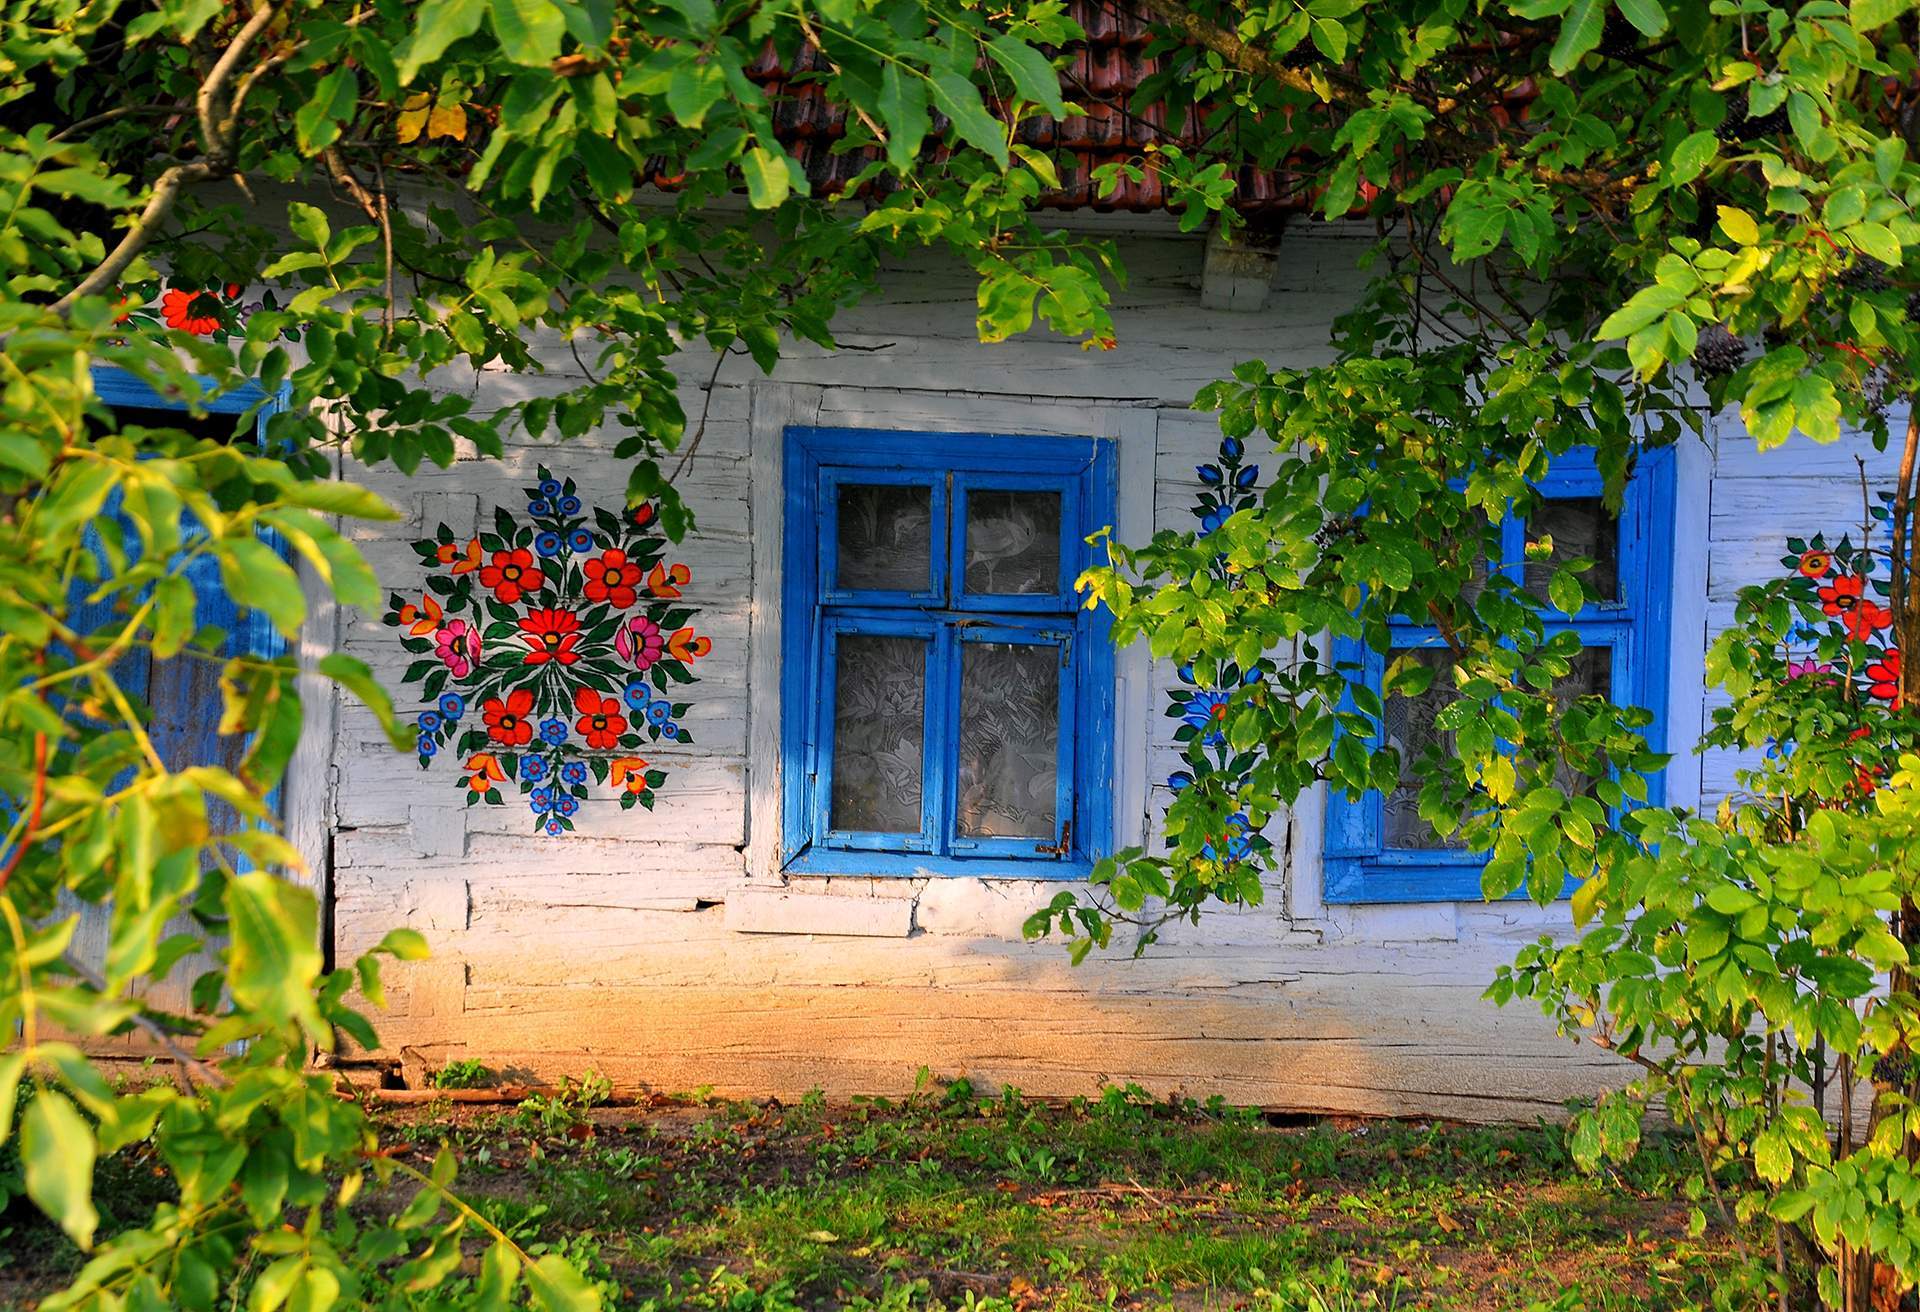 painted village of Zalipie, Poland